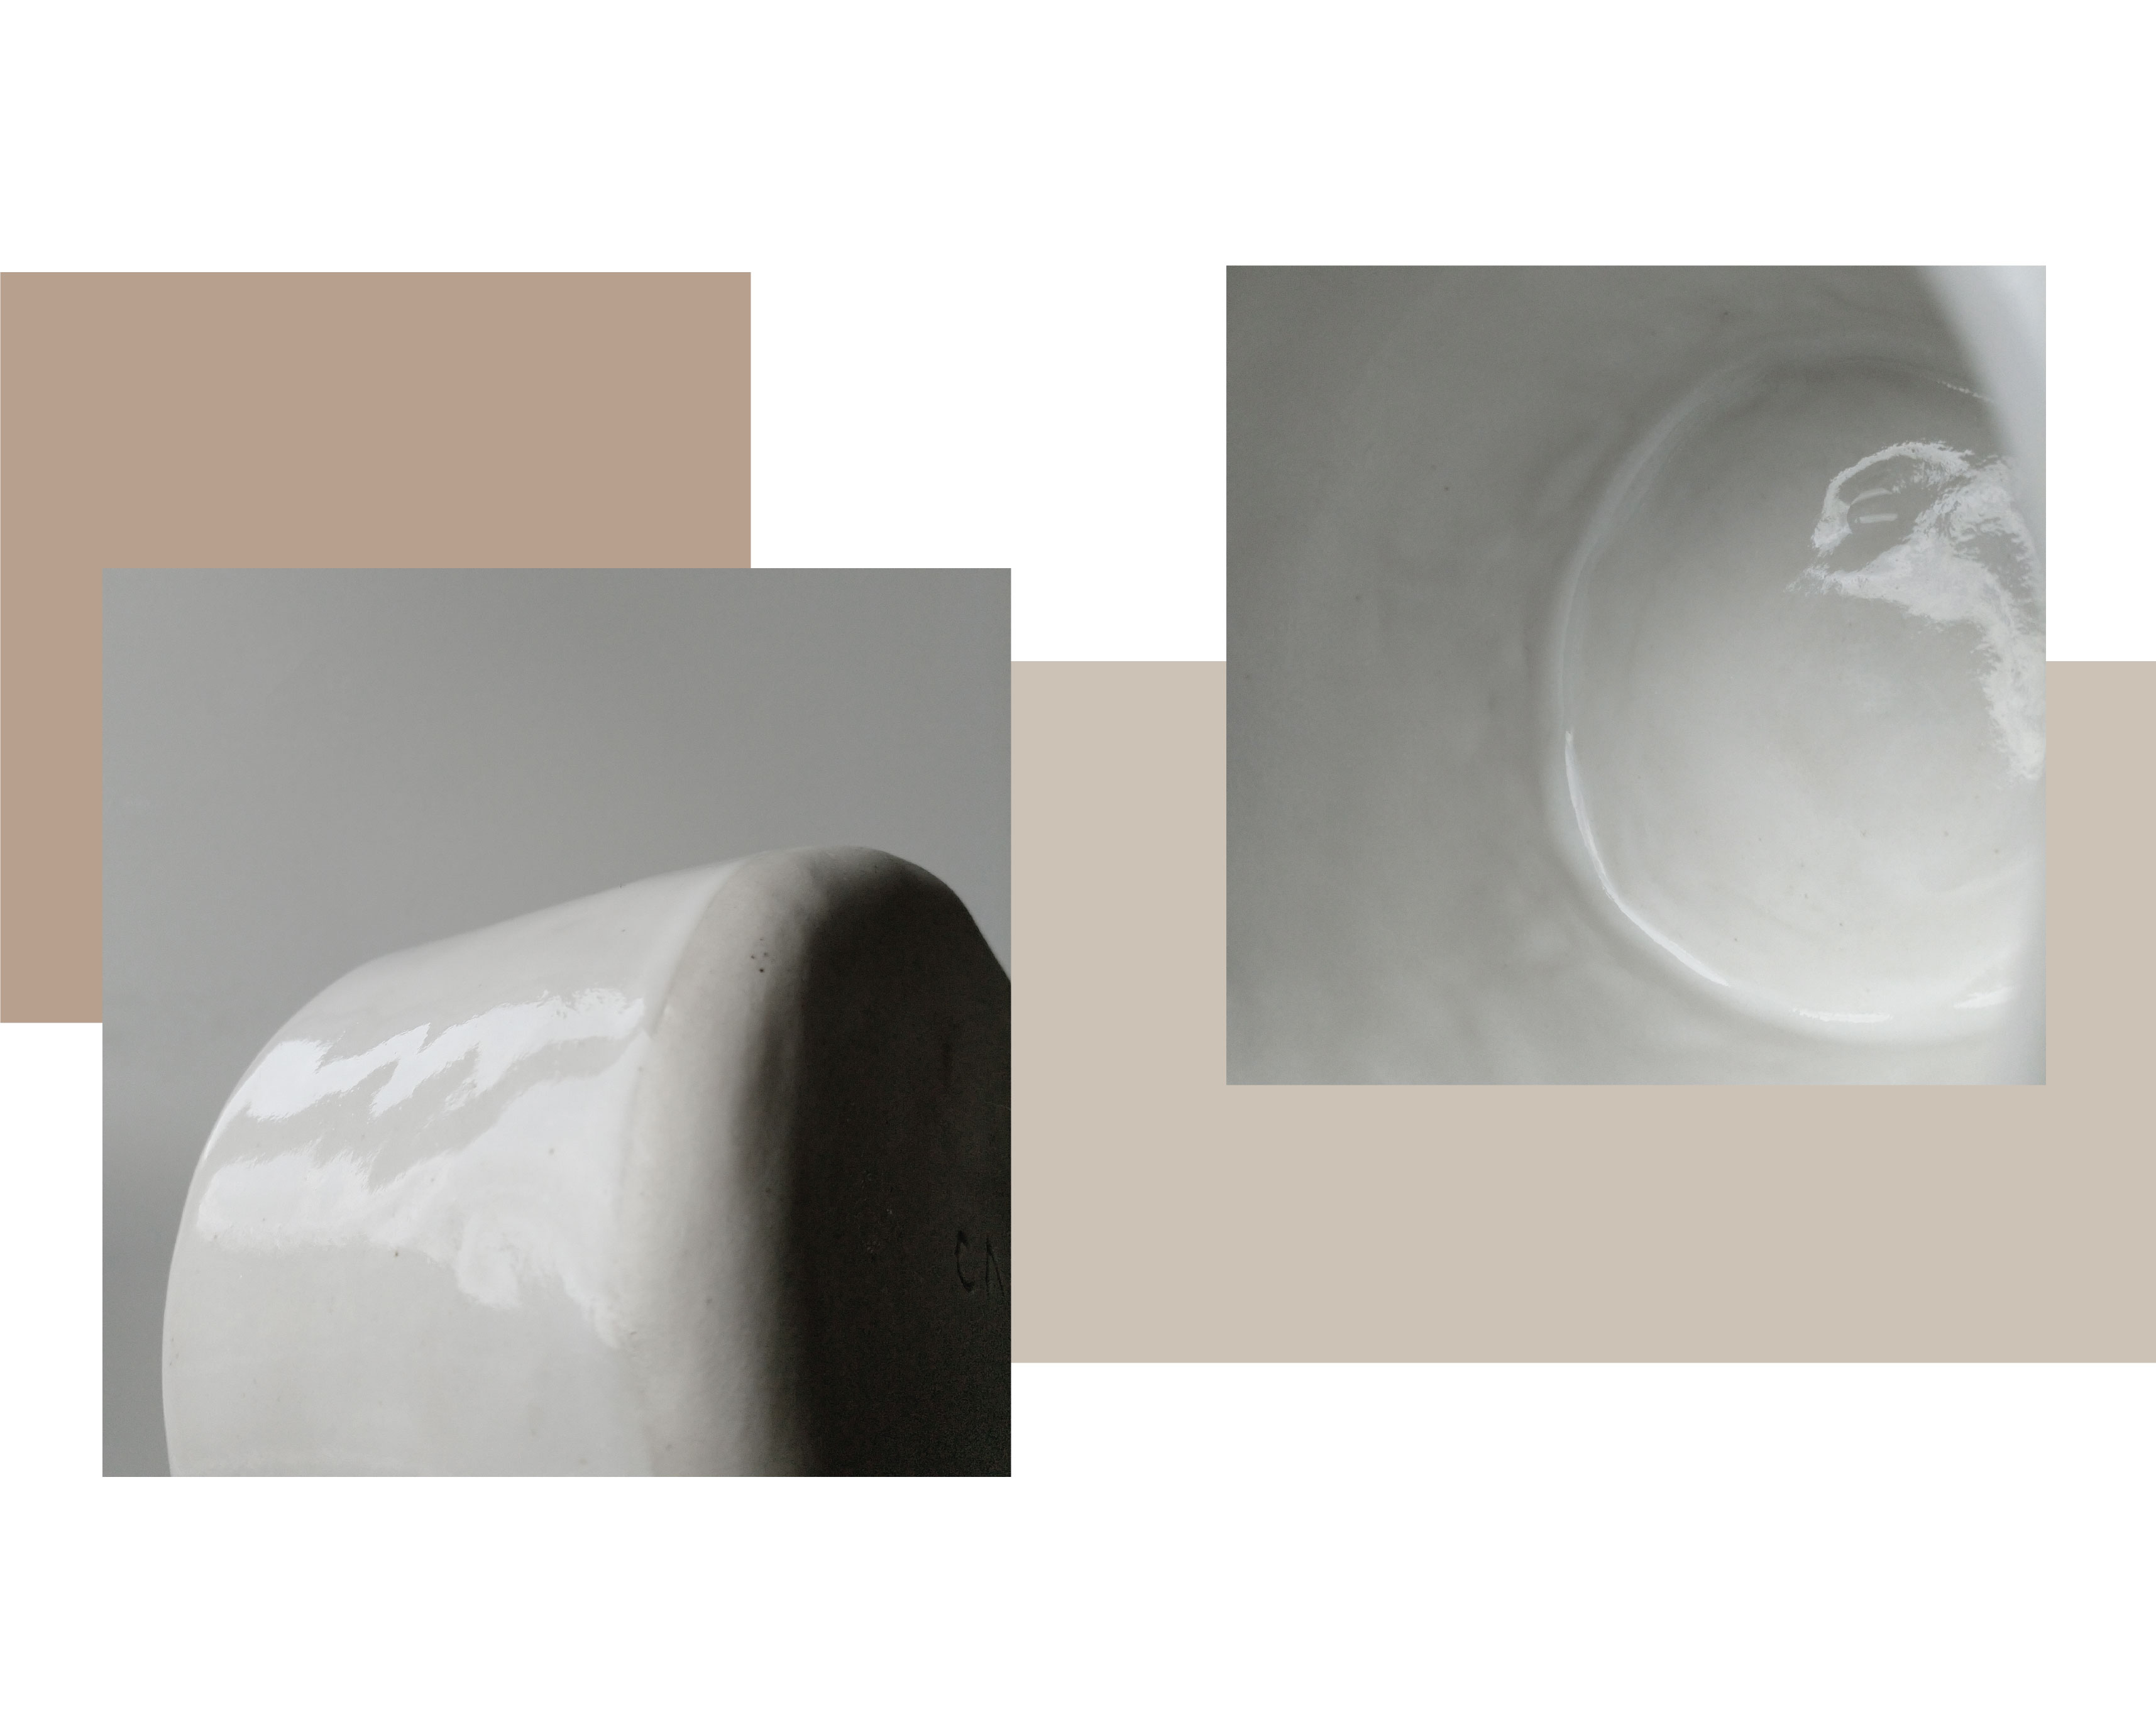  zwei Bilder zeigen Nahaufnahme der weißen Keramikoberfläche.